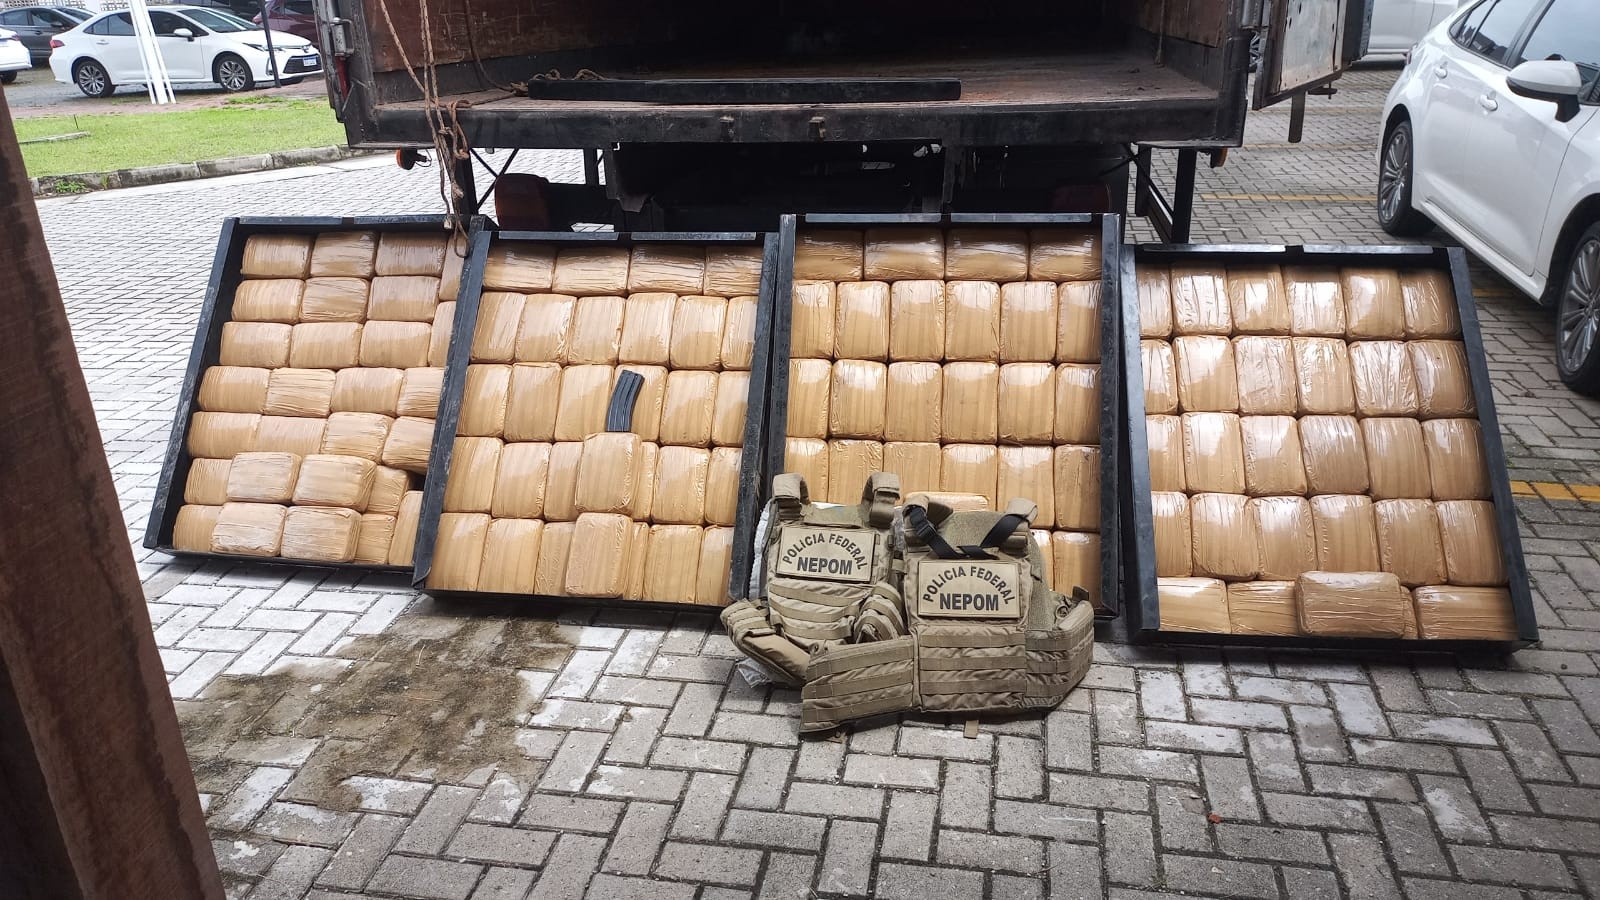 Polícia Federal apreende mais 120 quilos de skunk escondidos em fundo falso de caminhão, em Belém